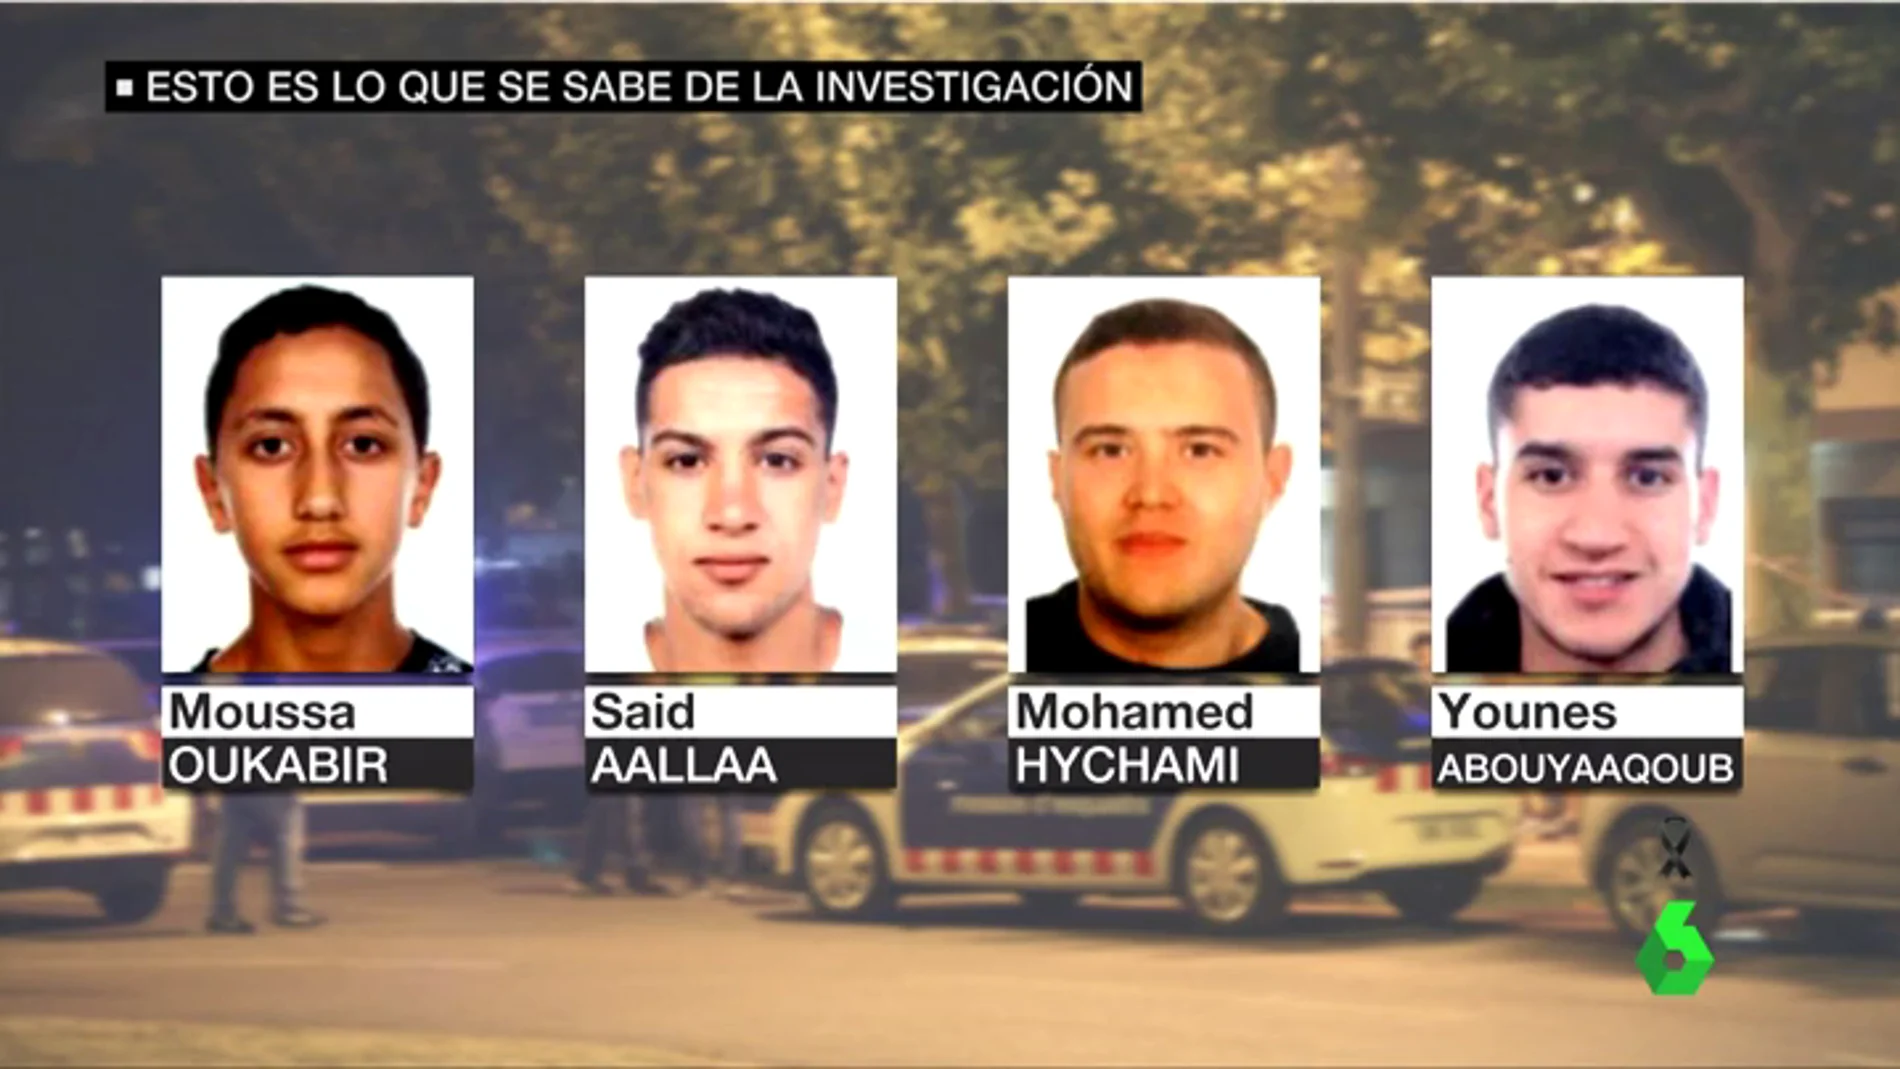 Los cuatro sospechosos buscados por los atentados en Catalunya fueron abatidos en Cambrils